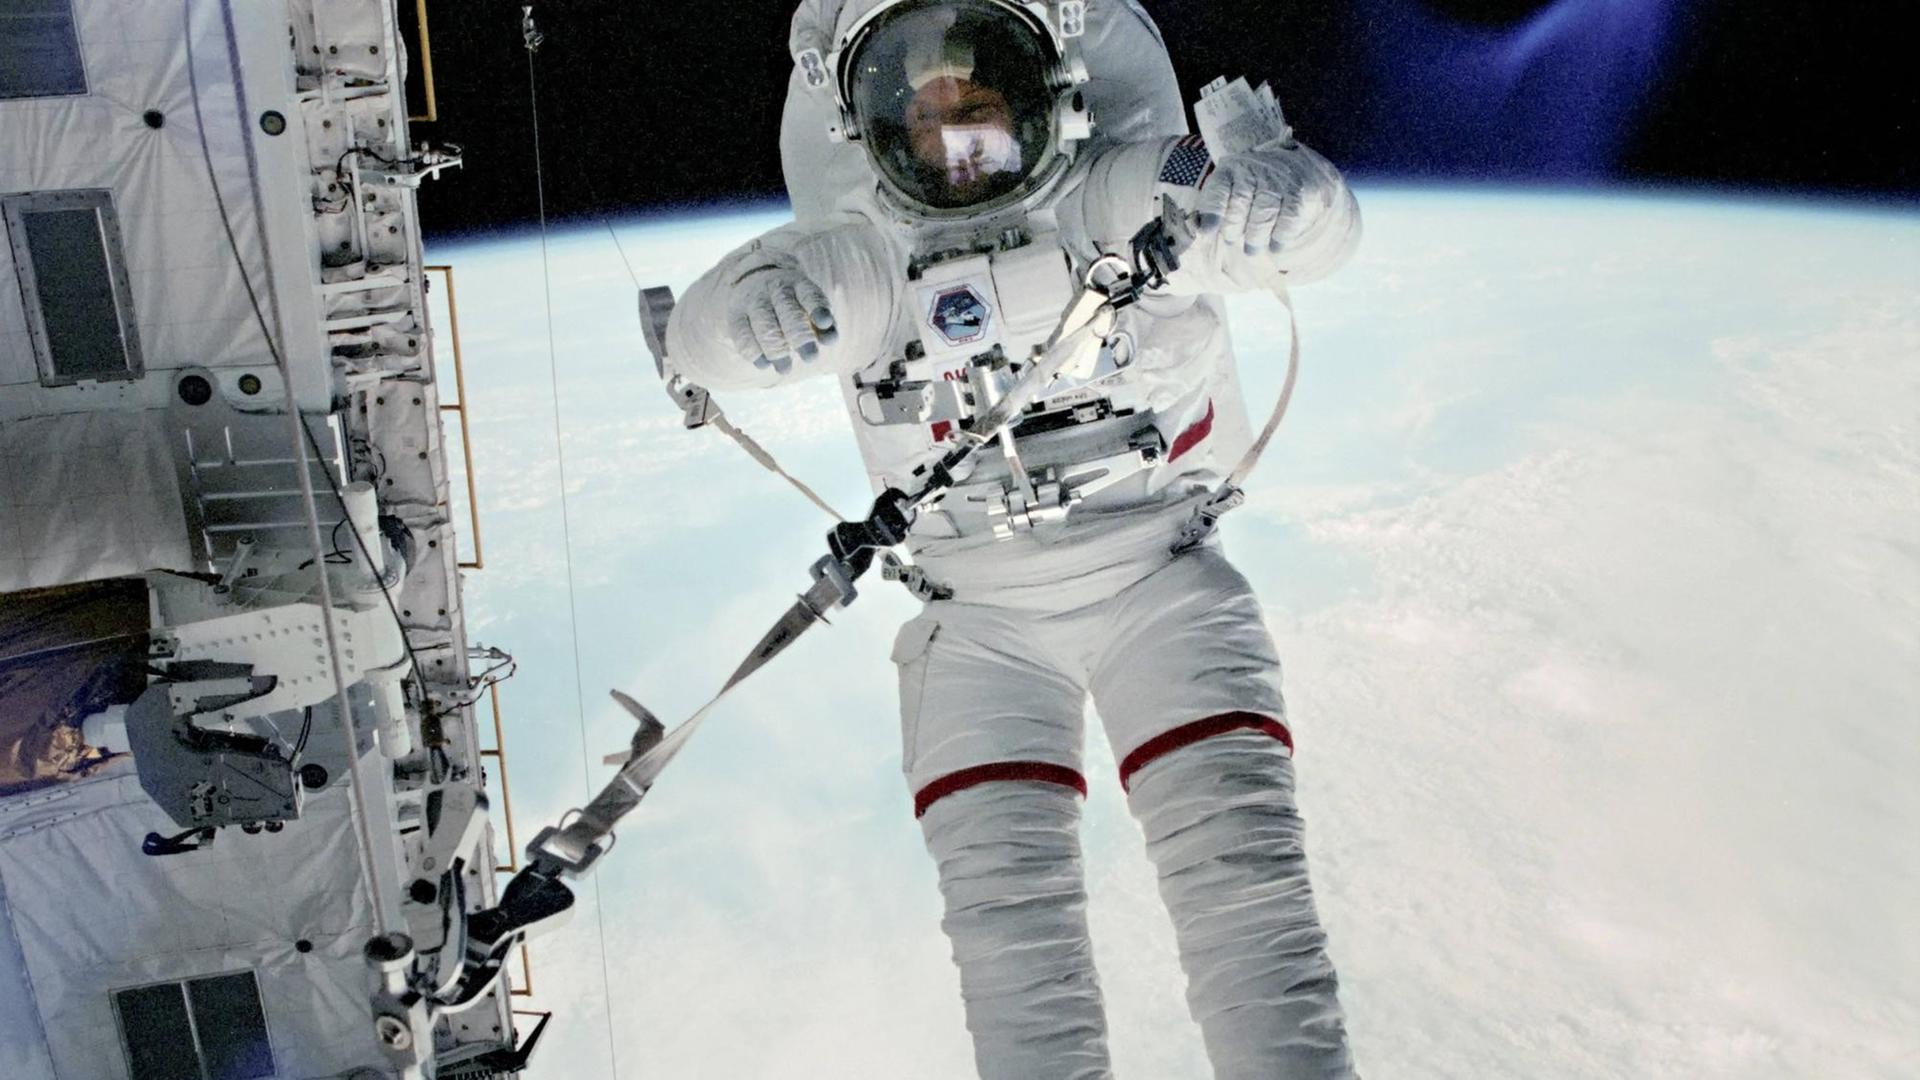 NASA-Astronaut Story Musgrave 1983 während eines Weltraumspazierganges in der Erdumlaufbahn.